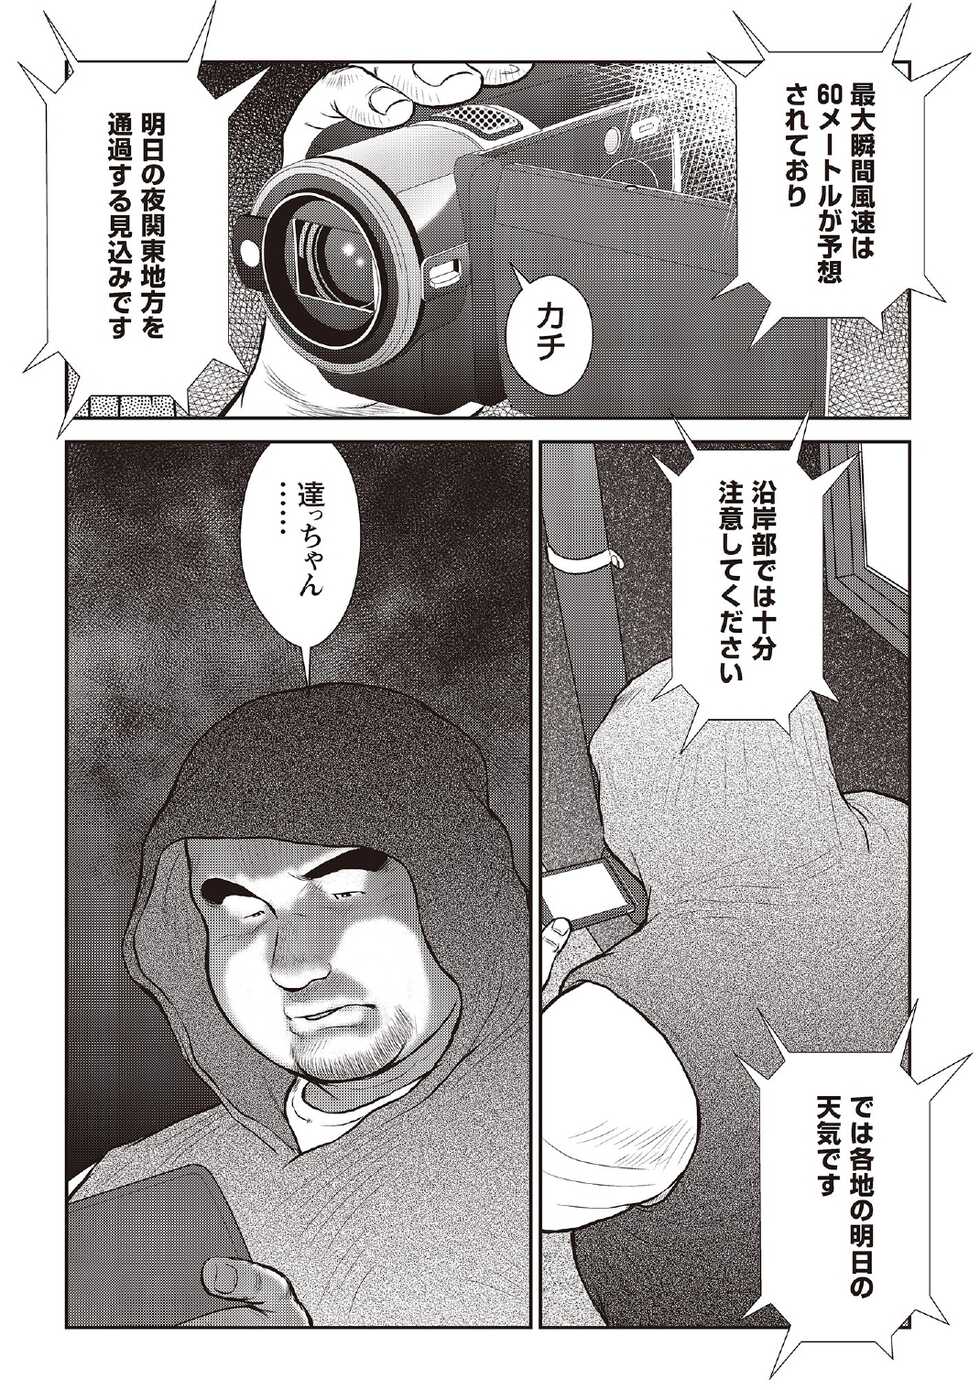 [Ebisubashi Seizou] Ebisubashi Seizou Tanpen Manga Shuu 2 Fuuun! Danshi Ryou [Bunsatsuban] PART 3 Bousou Hantou Taifuu Zensen Ch. 3 ~ Ch. 5 [Digital] - Page 26